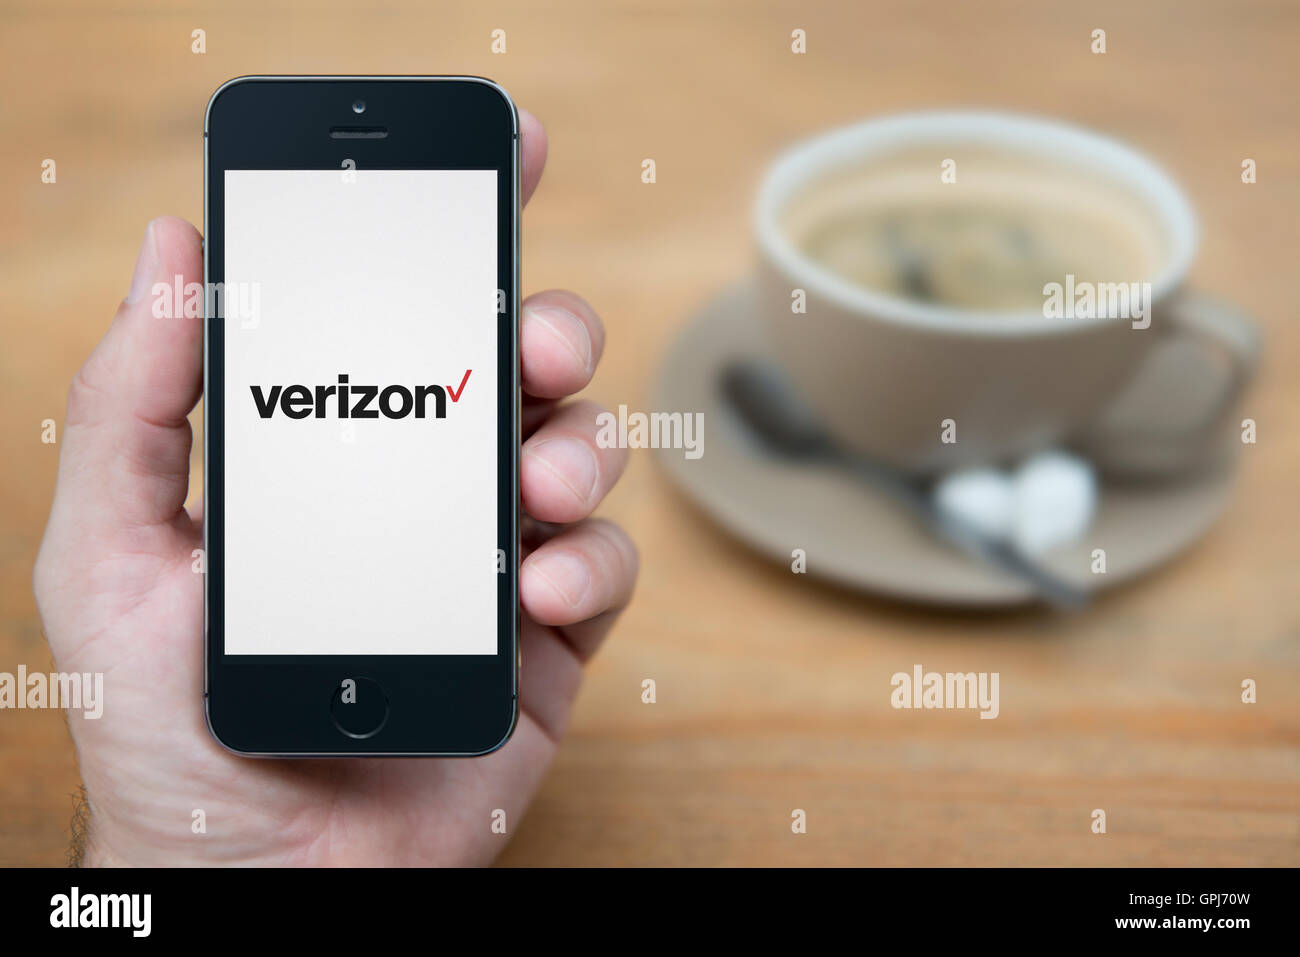 Un uomo guarda al suo iPhone che visualizza le telecomunicazioni Verizon logo operatore, con una tazza di caffè (solo uso editoriale) Foto Stock